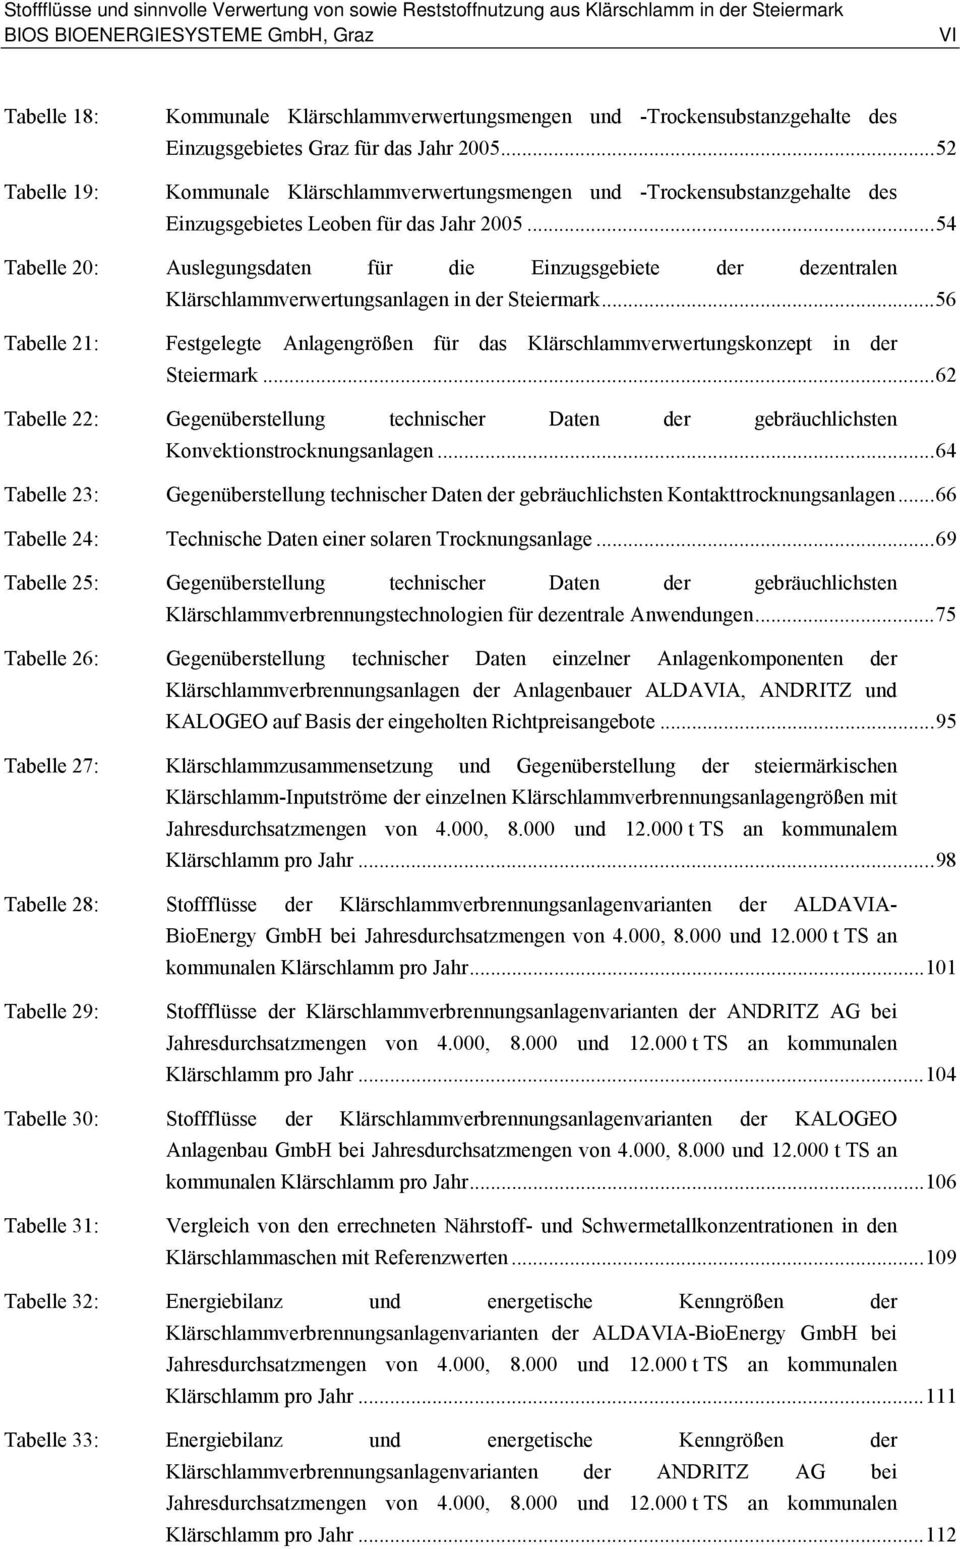 ..54 Tabelle 20: Auslegungsdaten für die Einzugsgebiete der dezentralen Klärschlammverwertungsanlagen in der Steiermark.